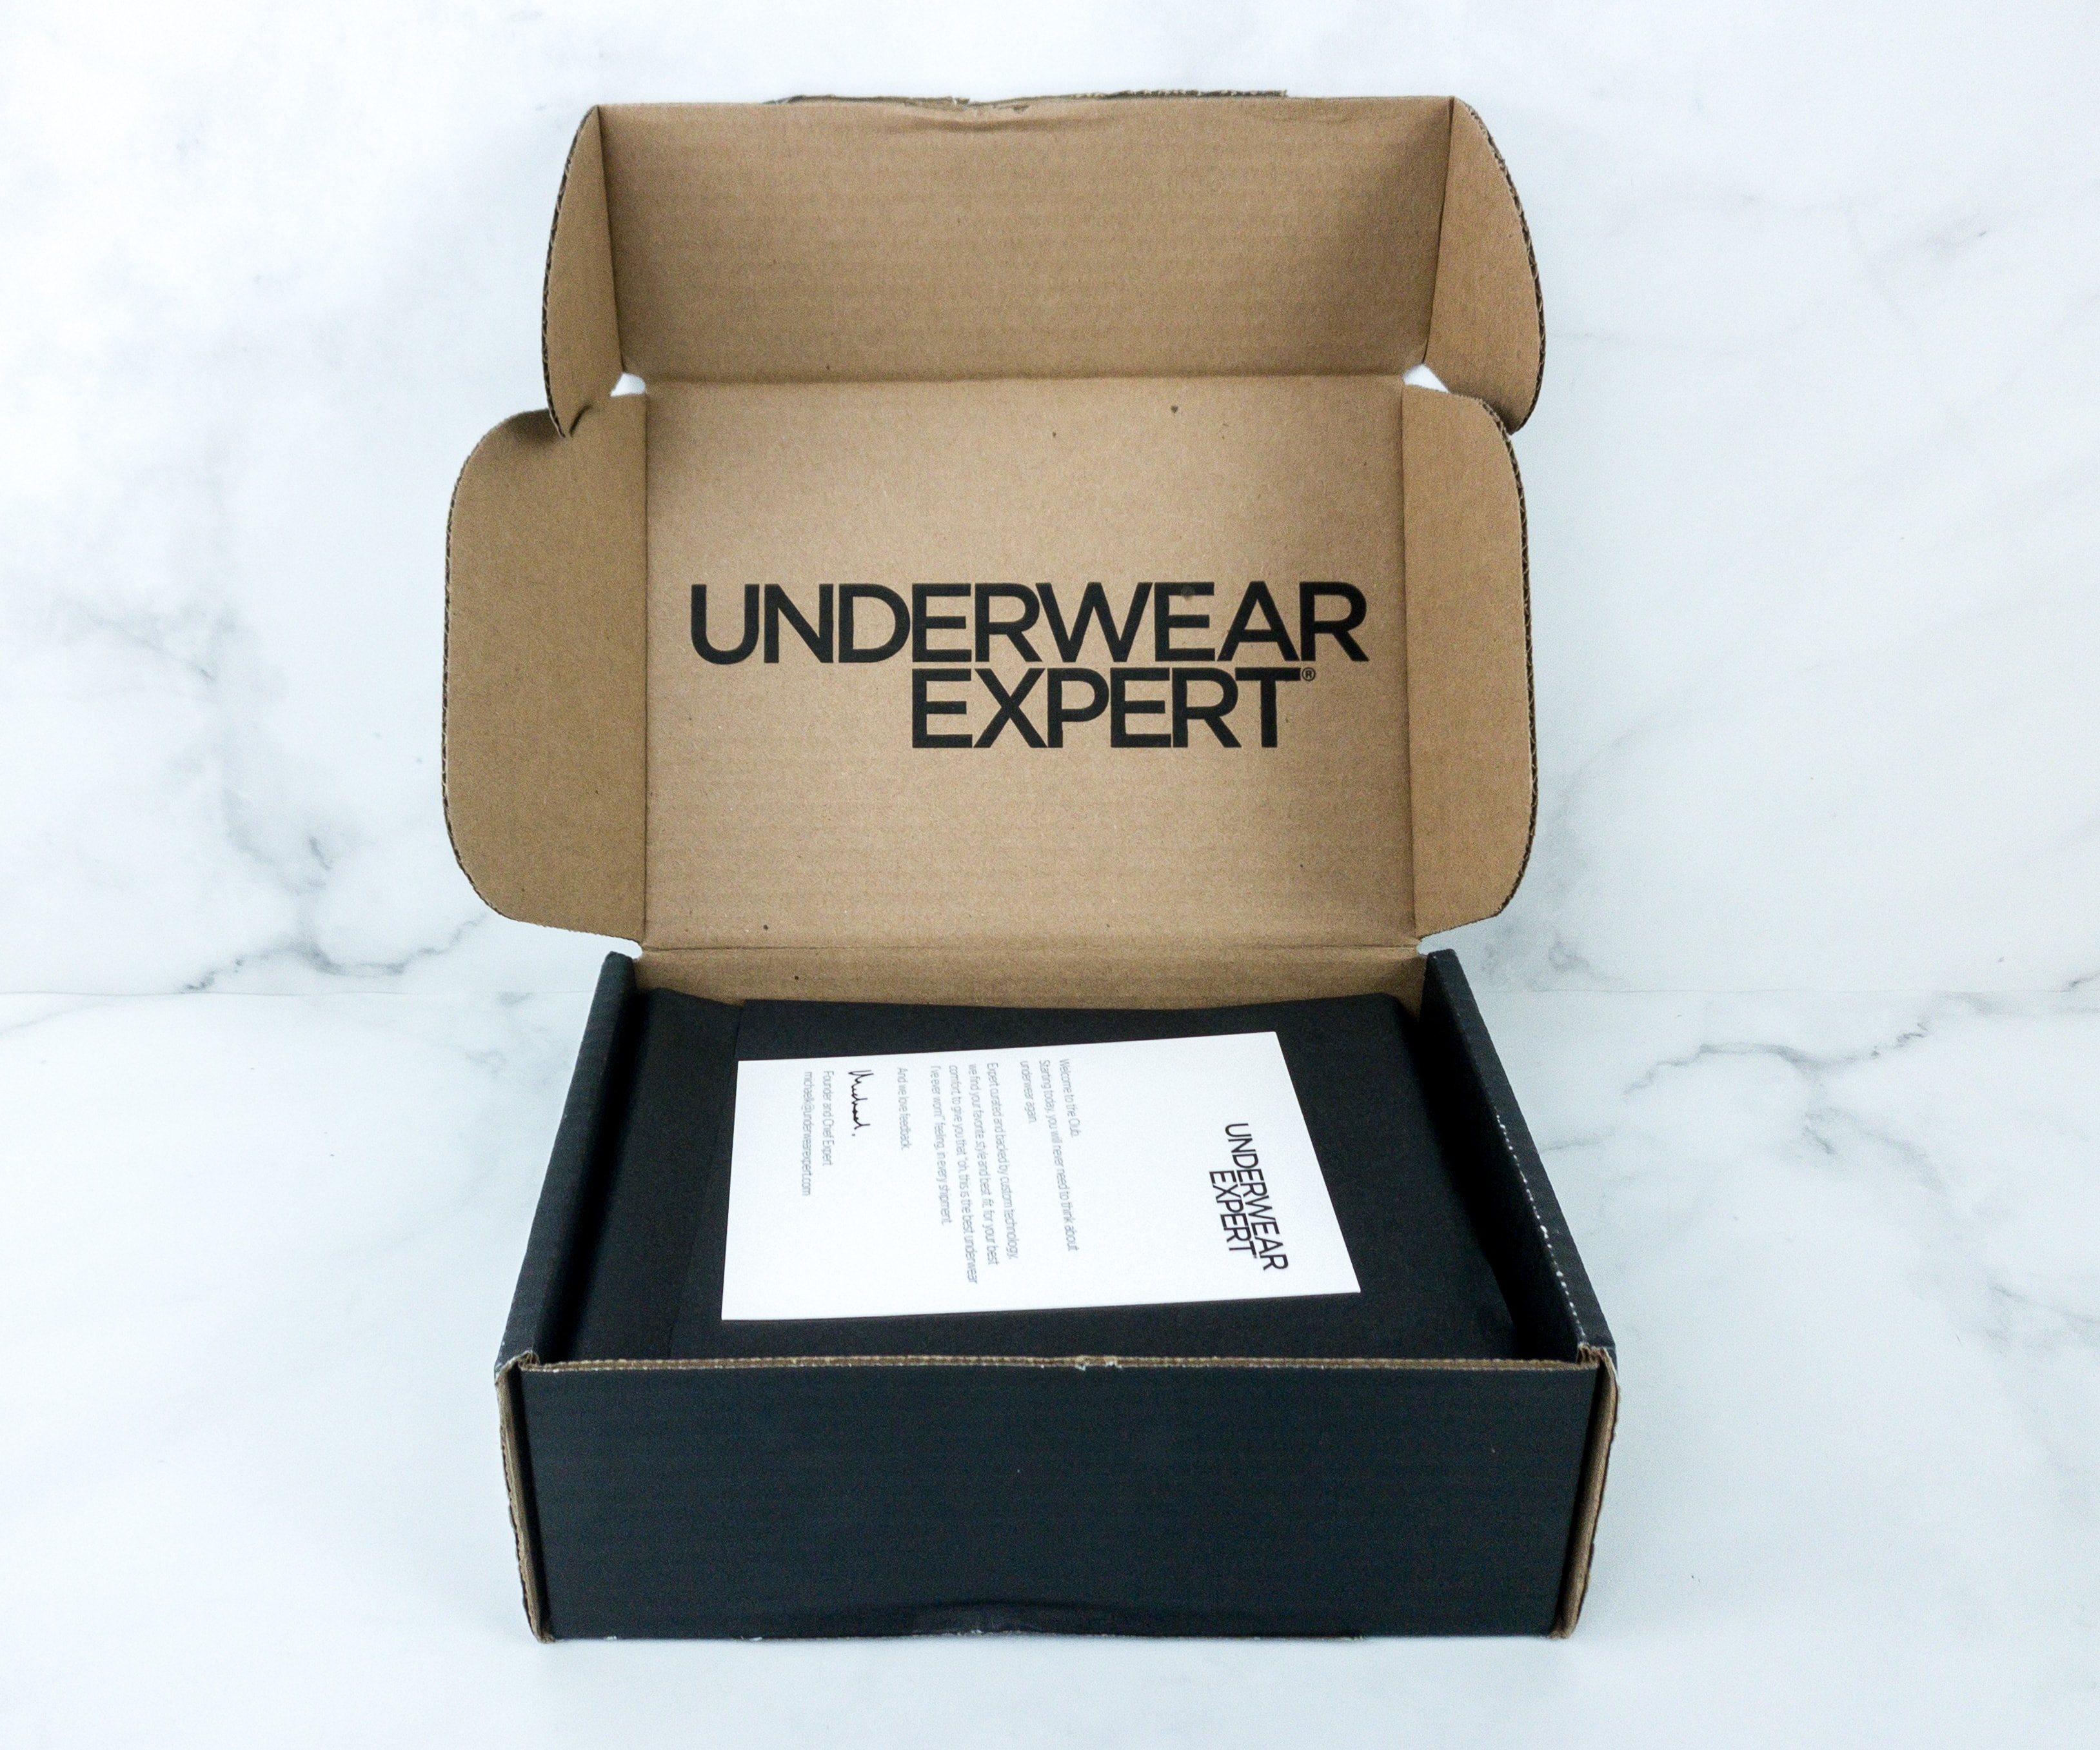 Underwear Expert: Welcome to Underwear Expert